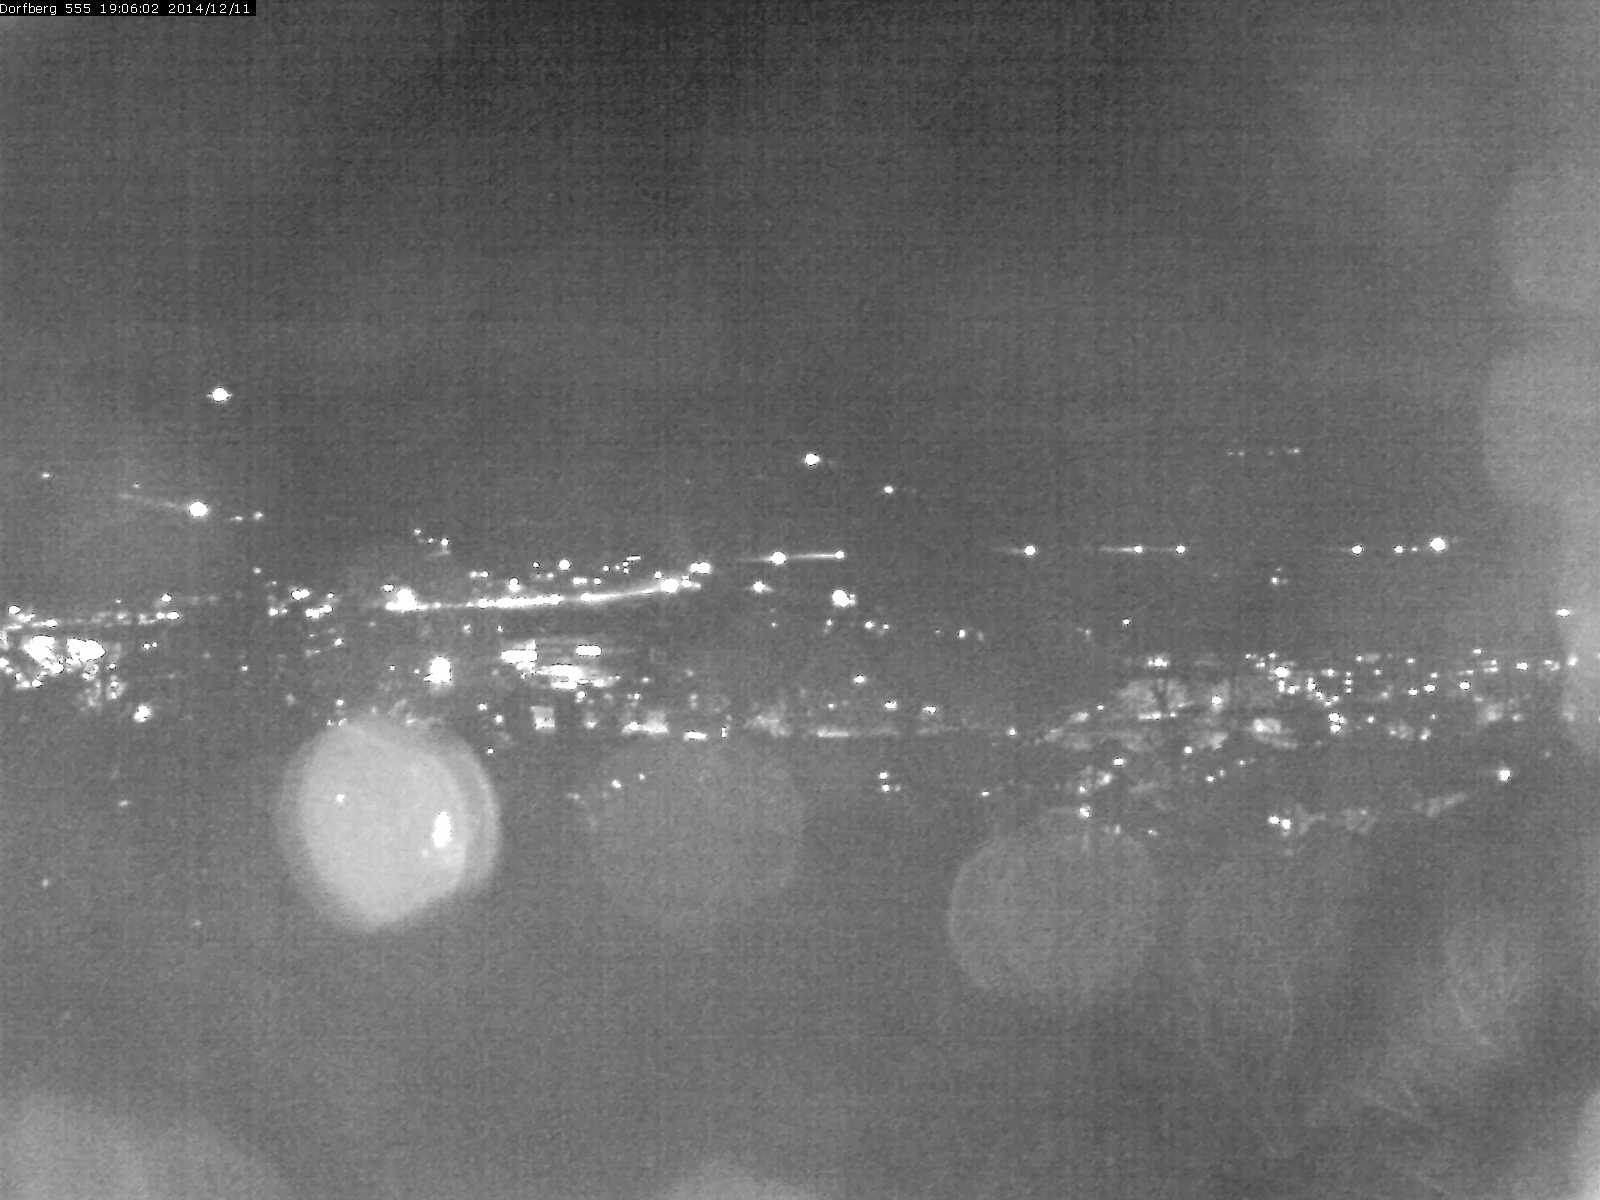 Webcam-Bild: Aussicht vom Dorfberg in Langnau 20141211-190601